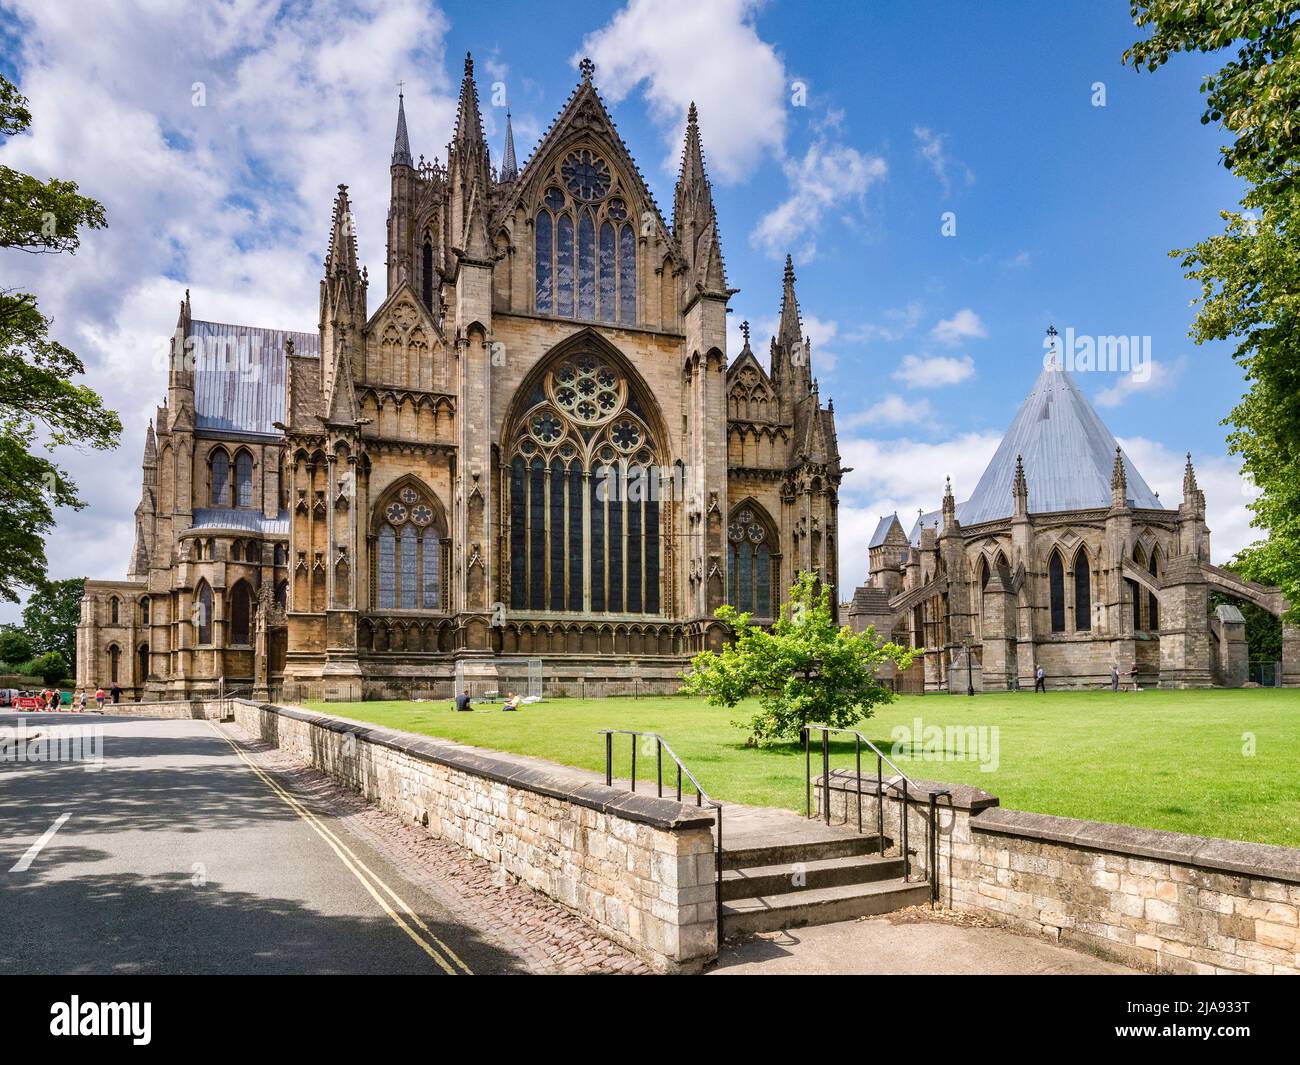 3 de julio de 2019: Lincoln, Reino Unido, la catedral y la sala capitular. Se está trabajando en la catedral y se pueden ver obreros. Foto de stock